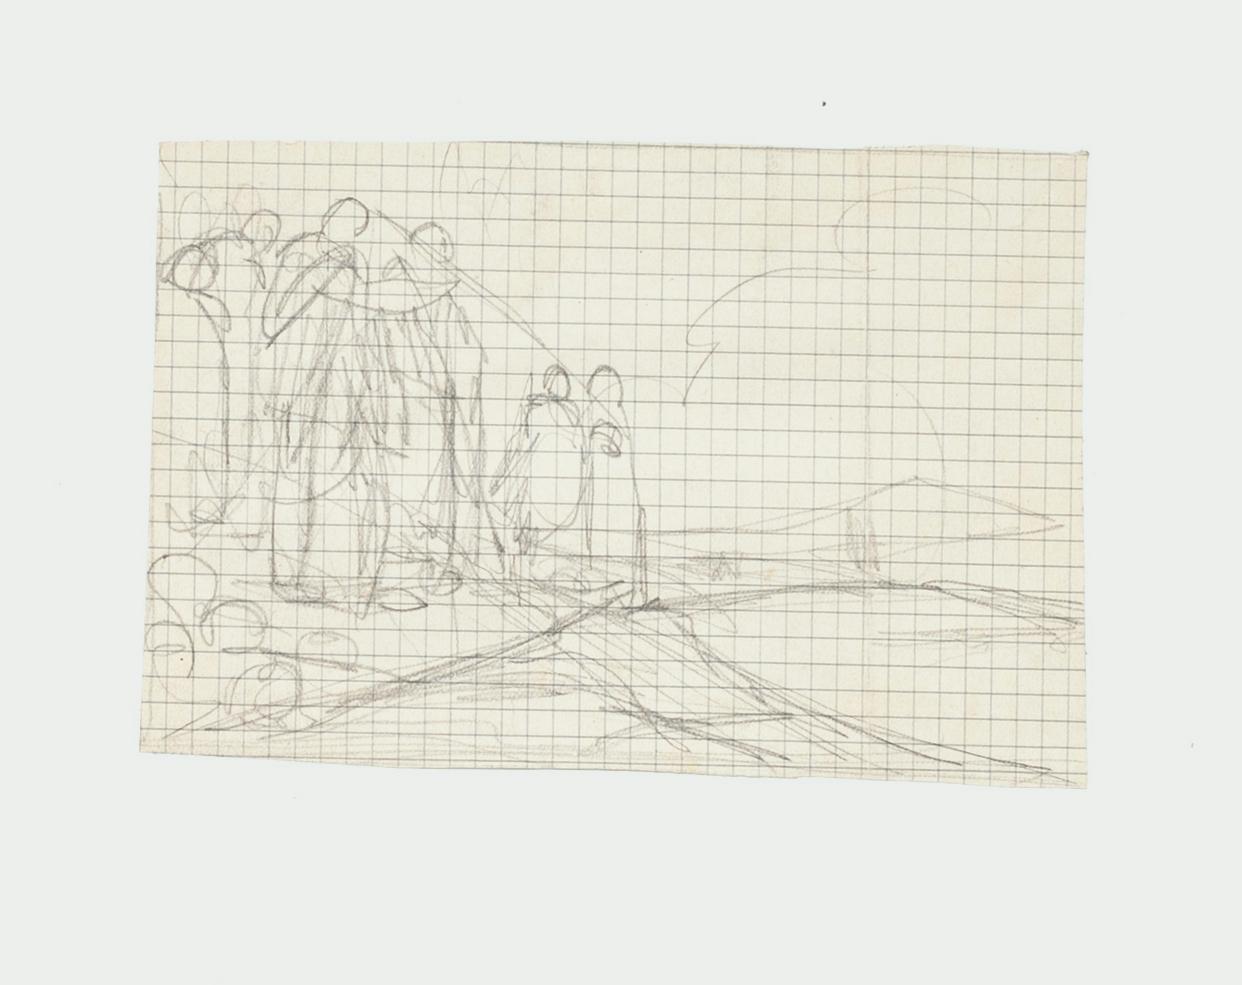 Figures - Pencil Drawing by G. Galantara - Early 20th Century - Art by Gabriele Galantara